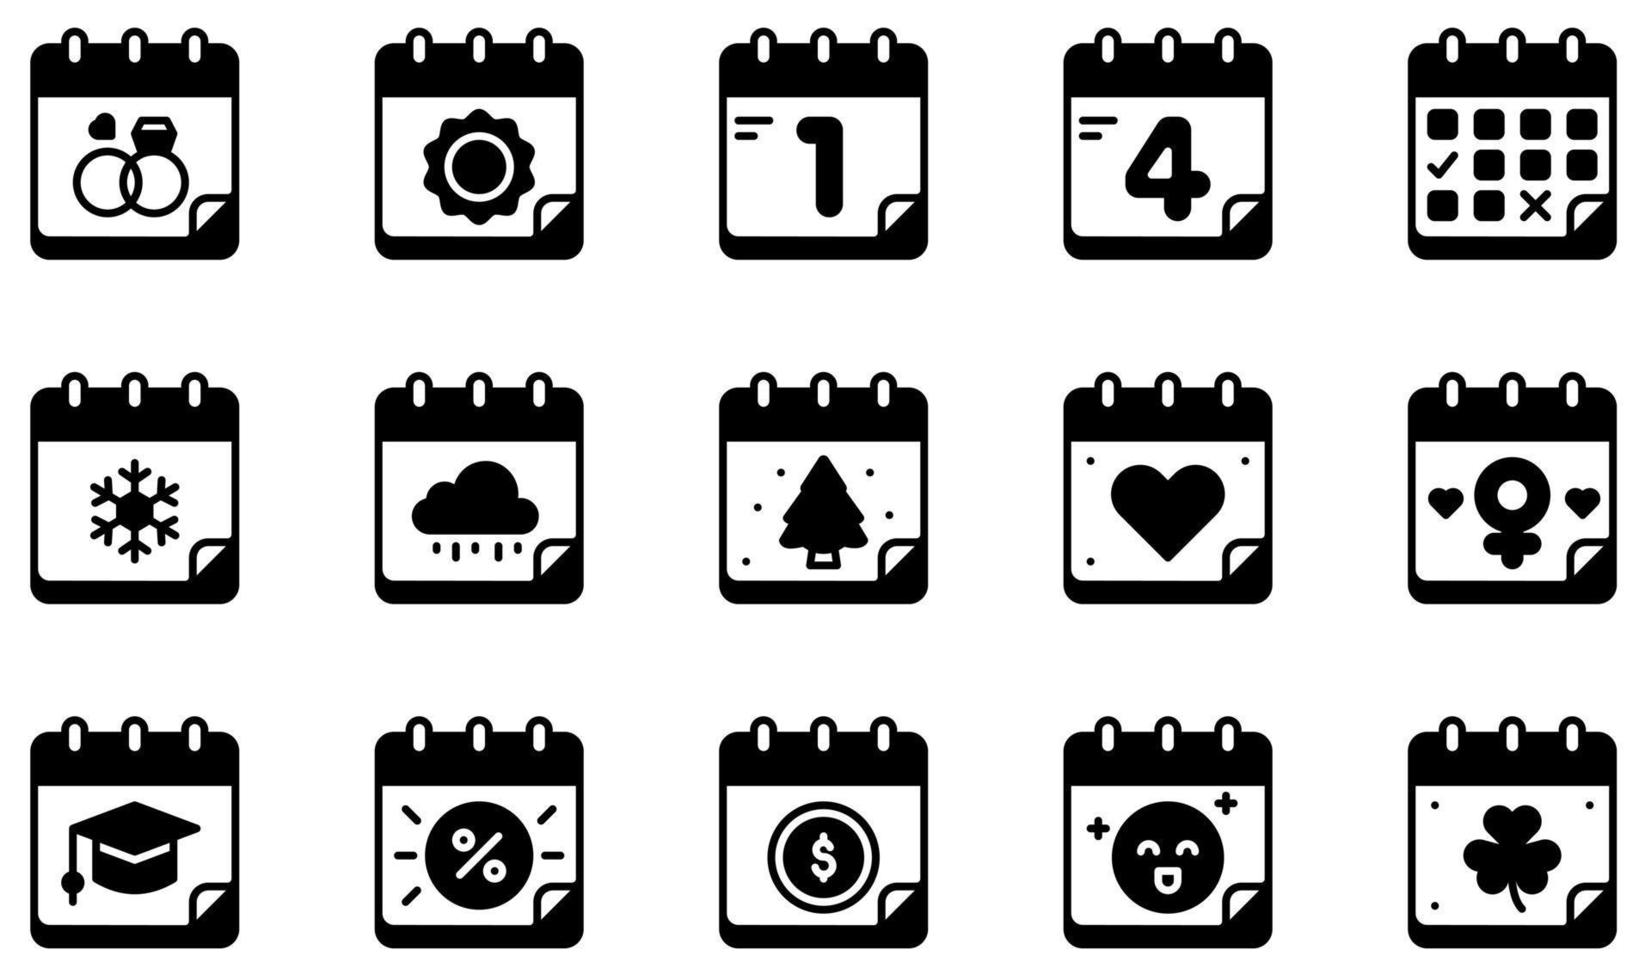 set di icone vettoriali relative al calendario e alle date. contiene icone come calendario, giorno, ora, evento, pianificazione, amministrazione e altro ancora.